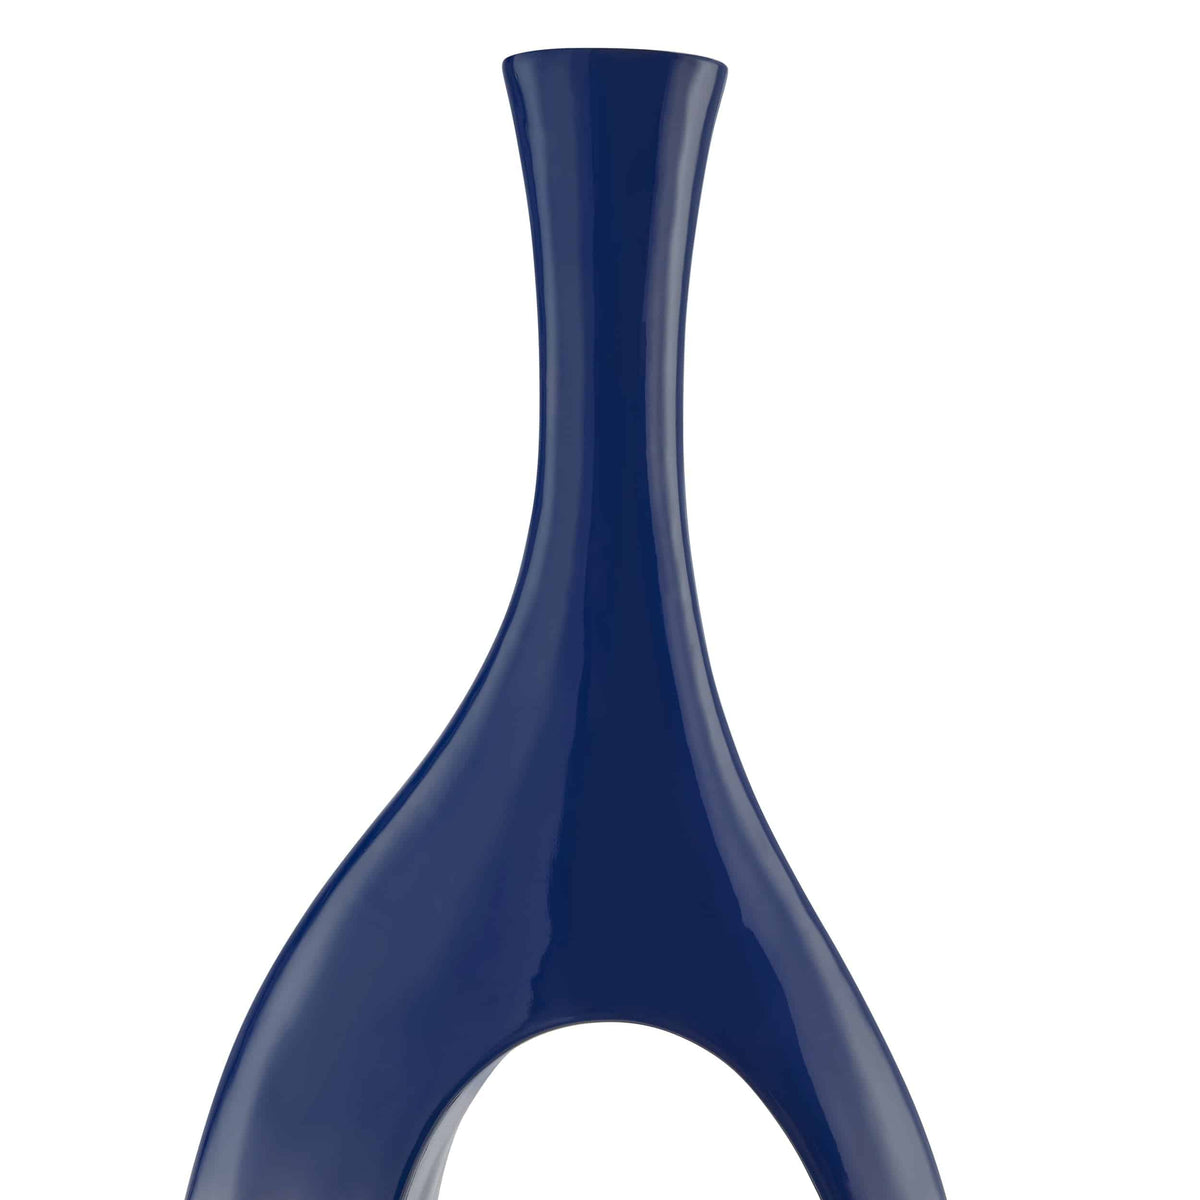 Trombone Modern Vase in Navy Blue / Small